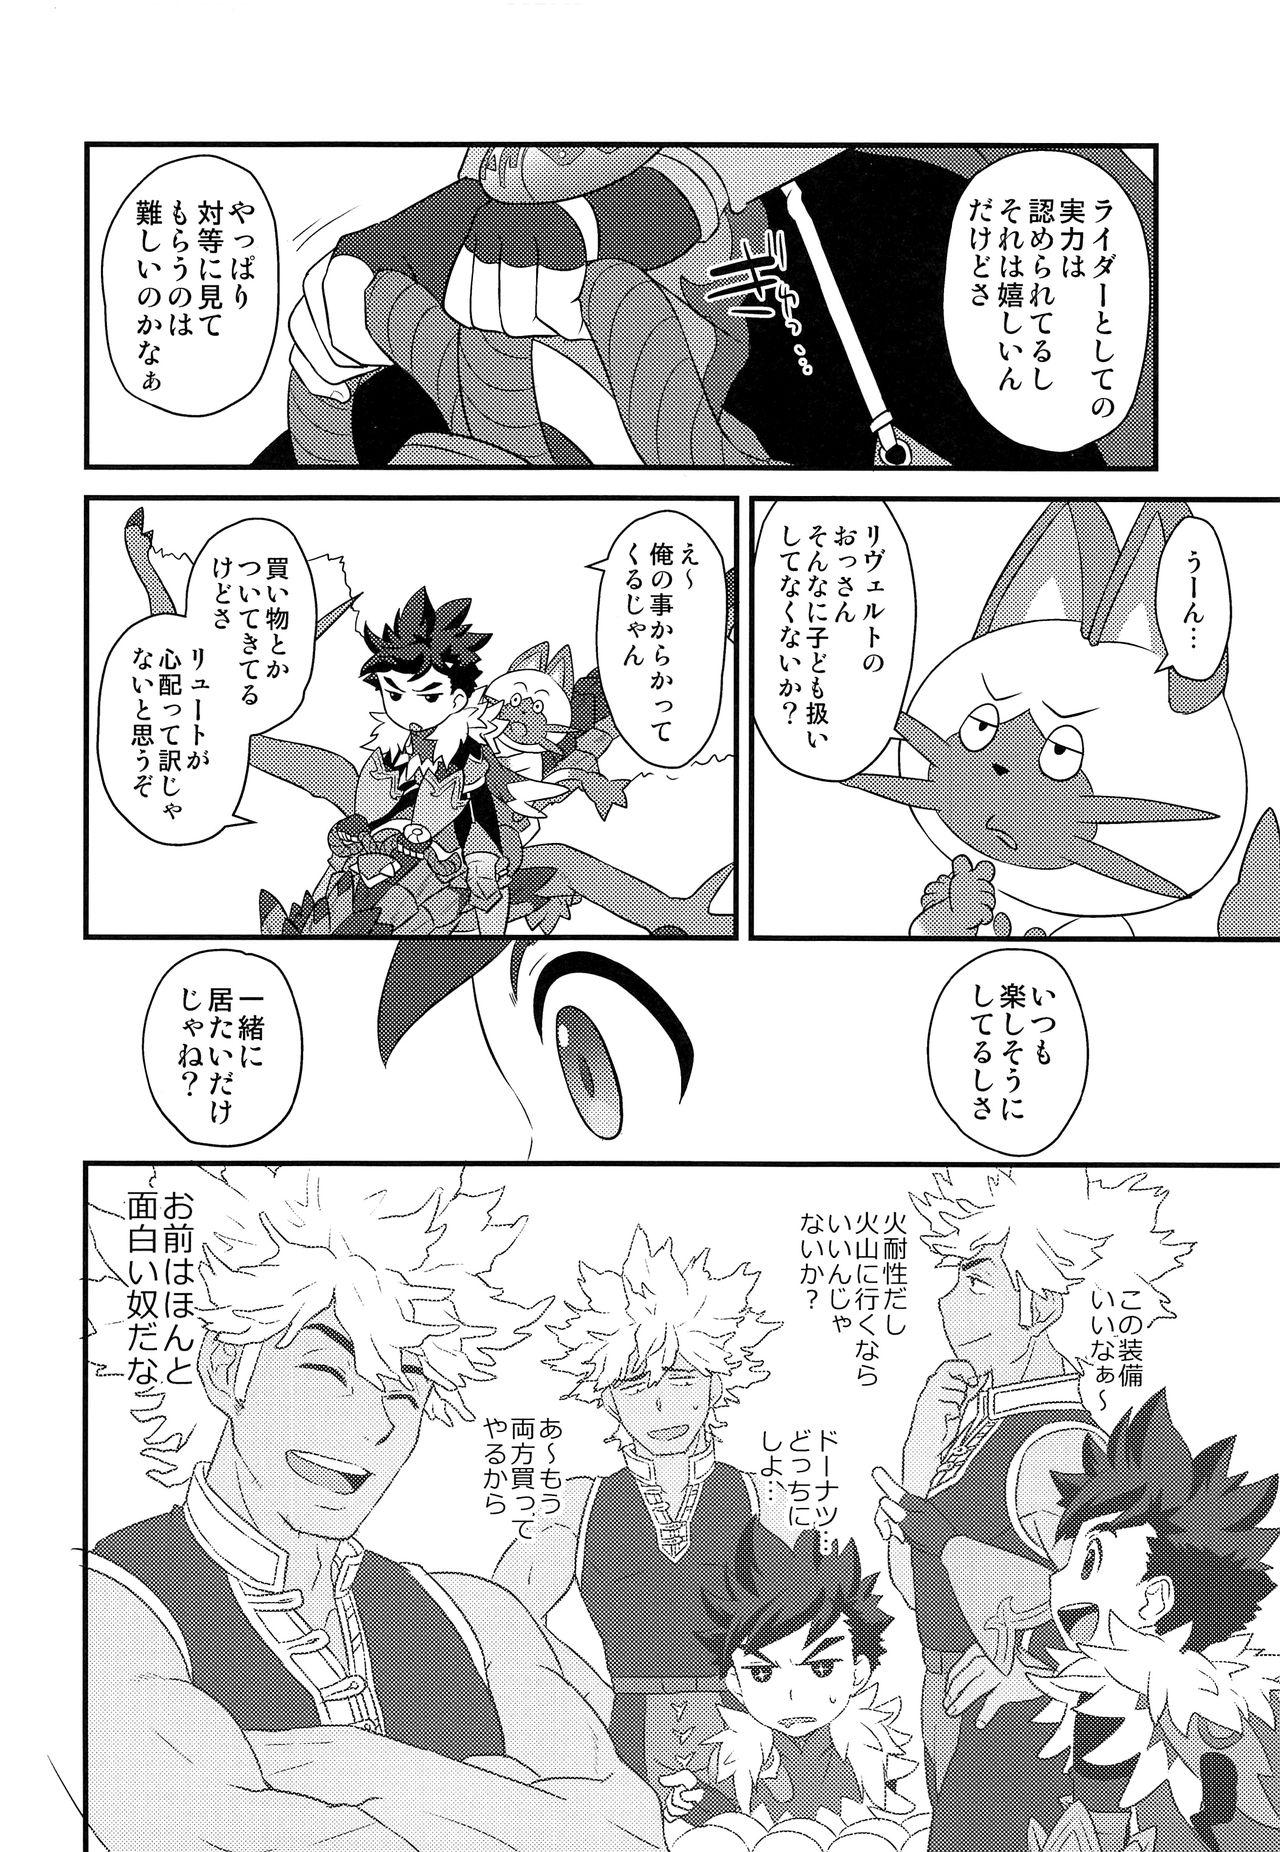 Nalgas Koi no Shibire Wana - Monster hunter Solo - Page 9